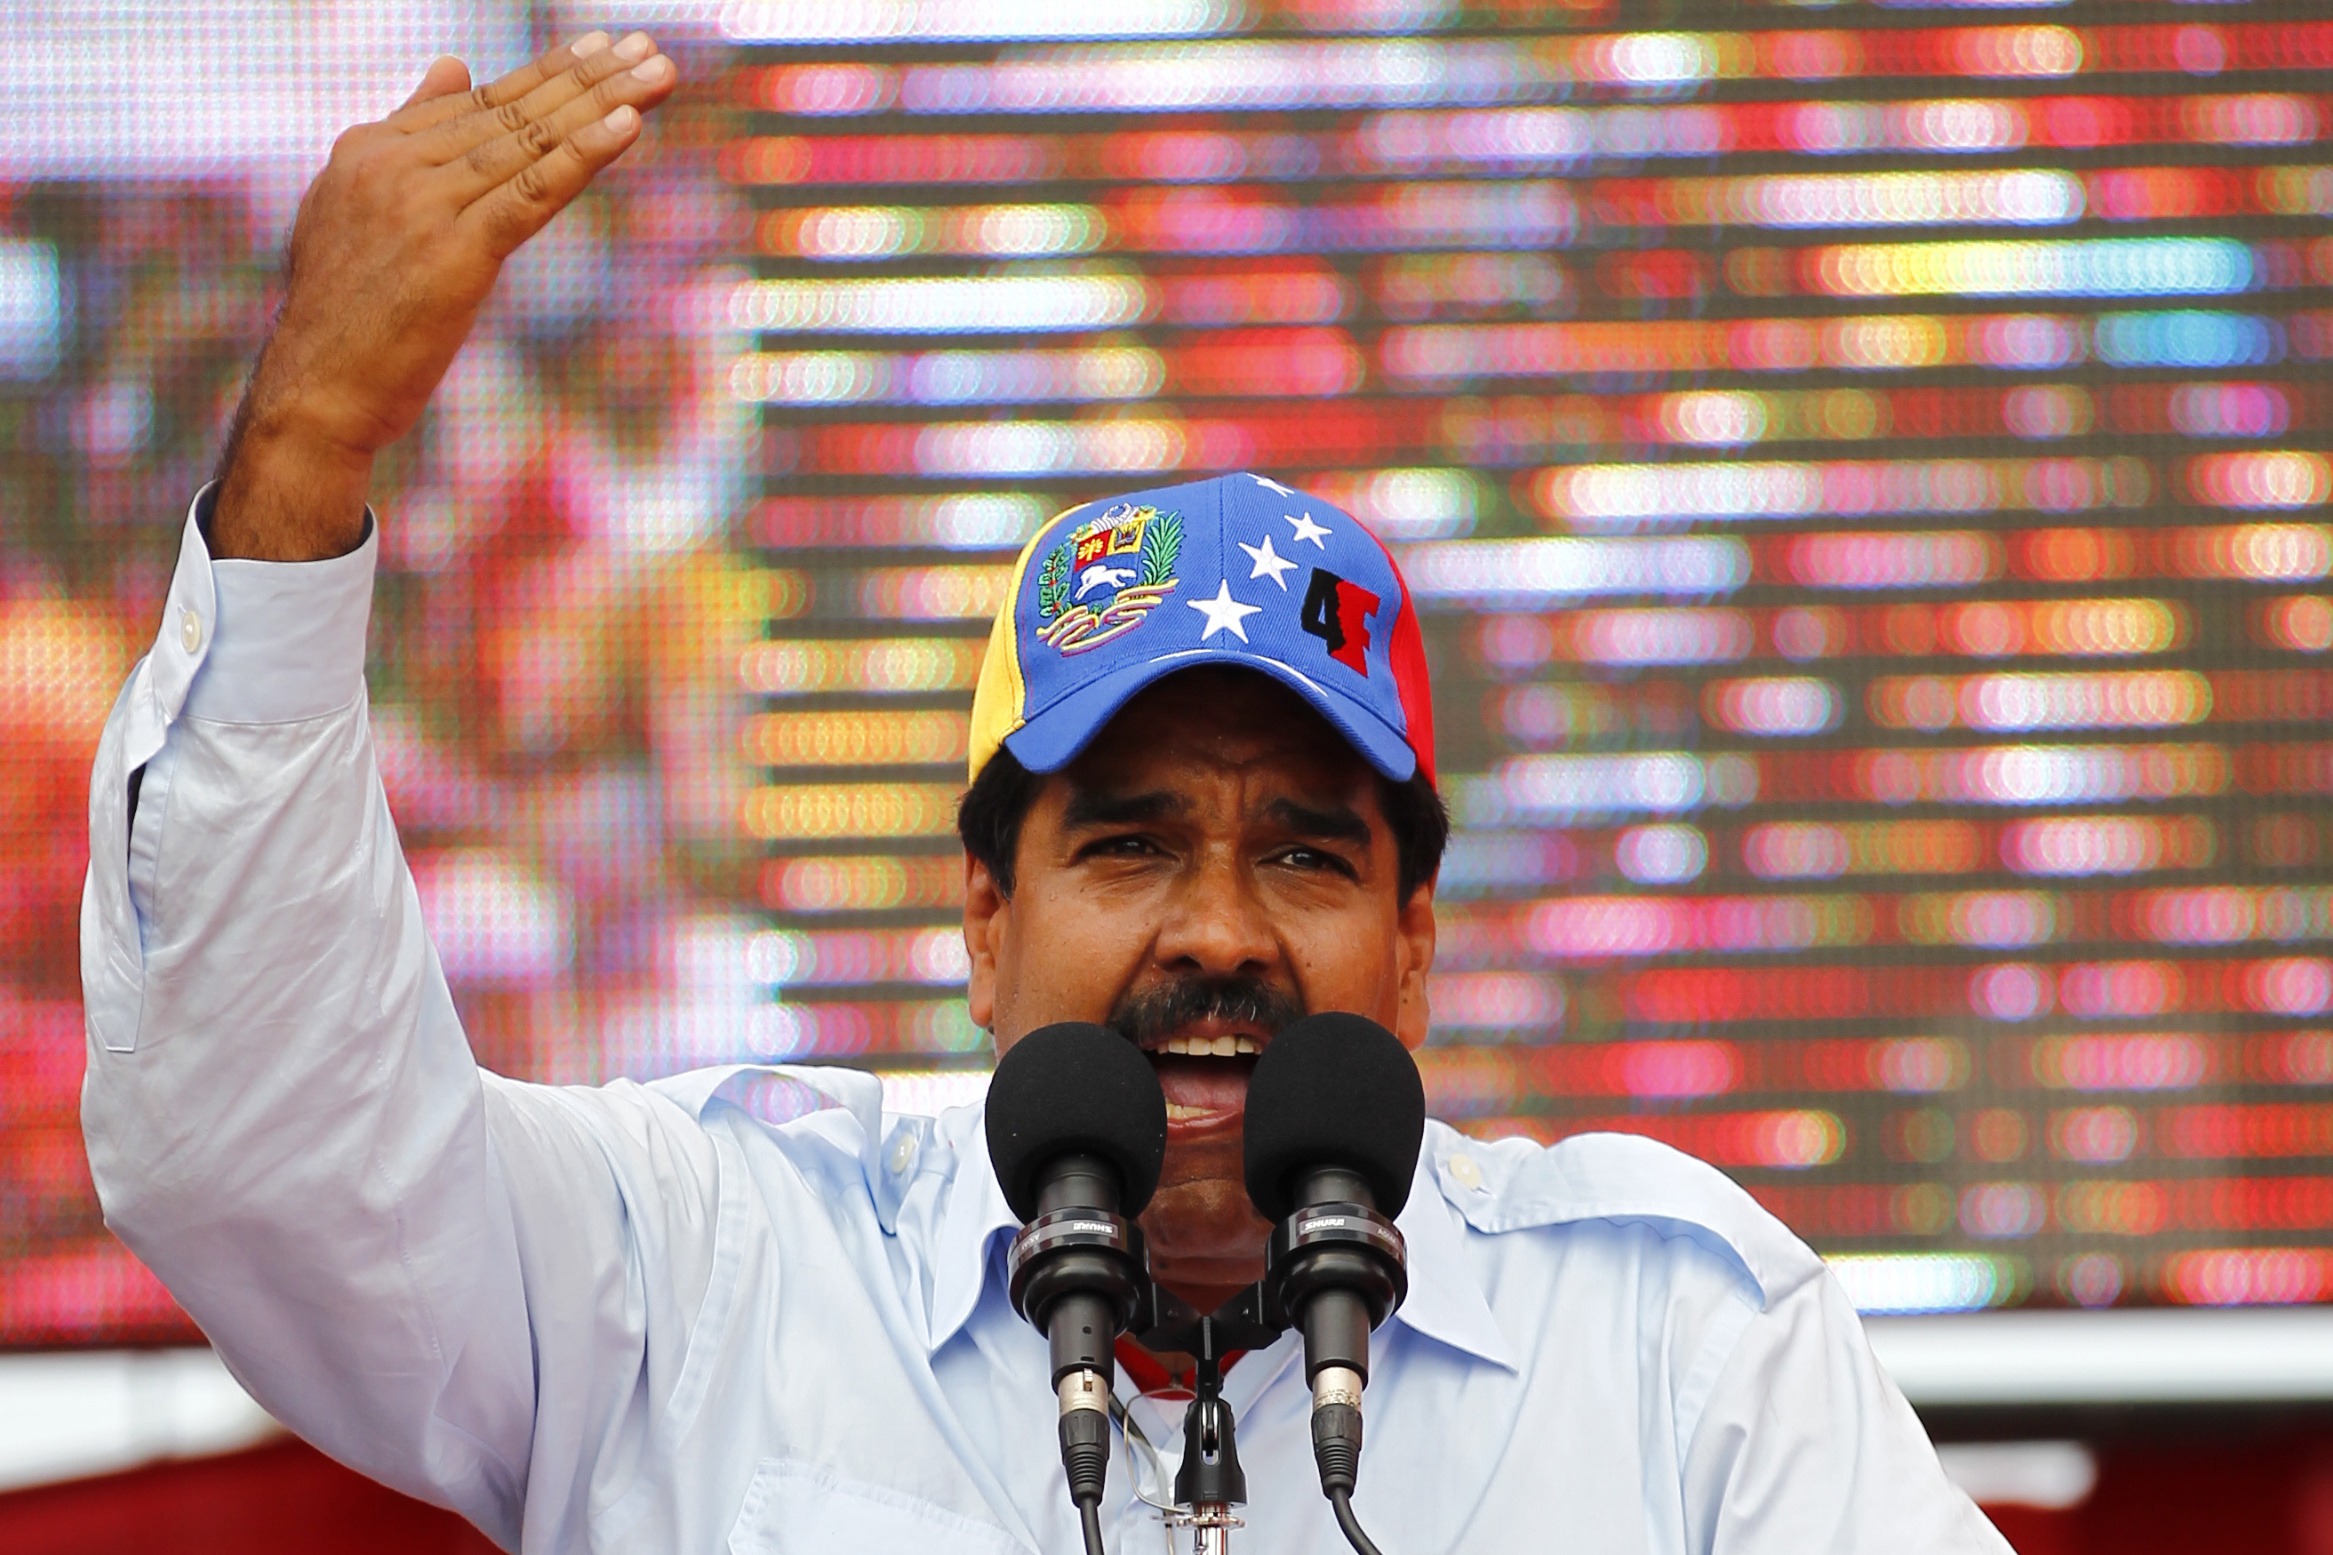 En acto de campaña Maduro ordena militarización de subestaciones eléctricas (VIDEO)